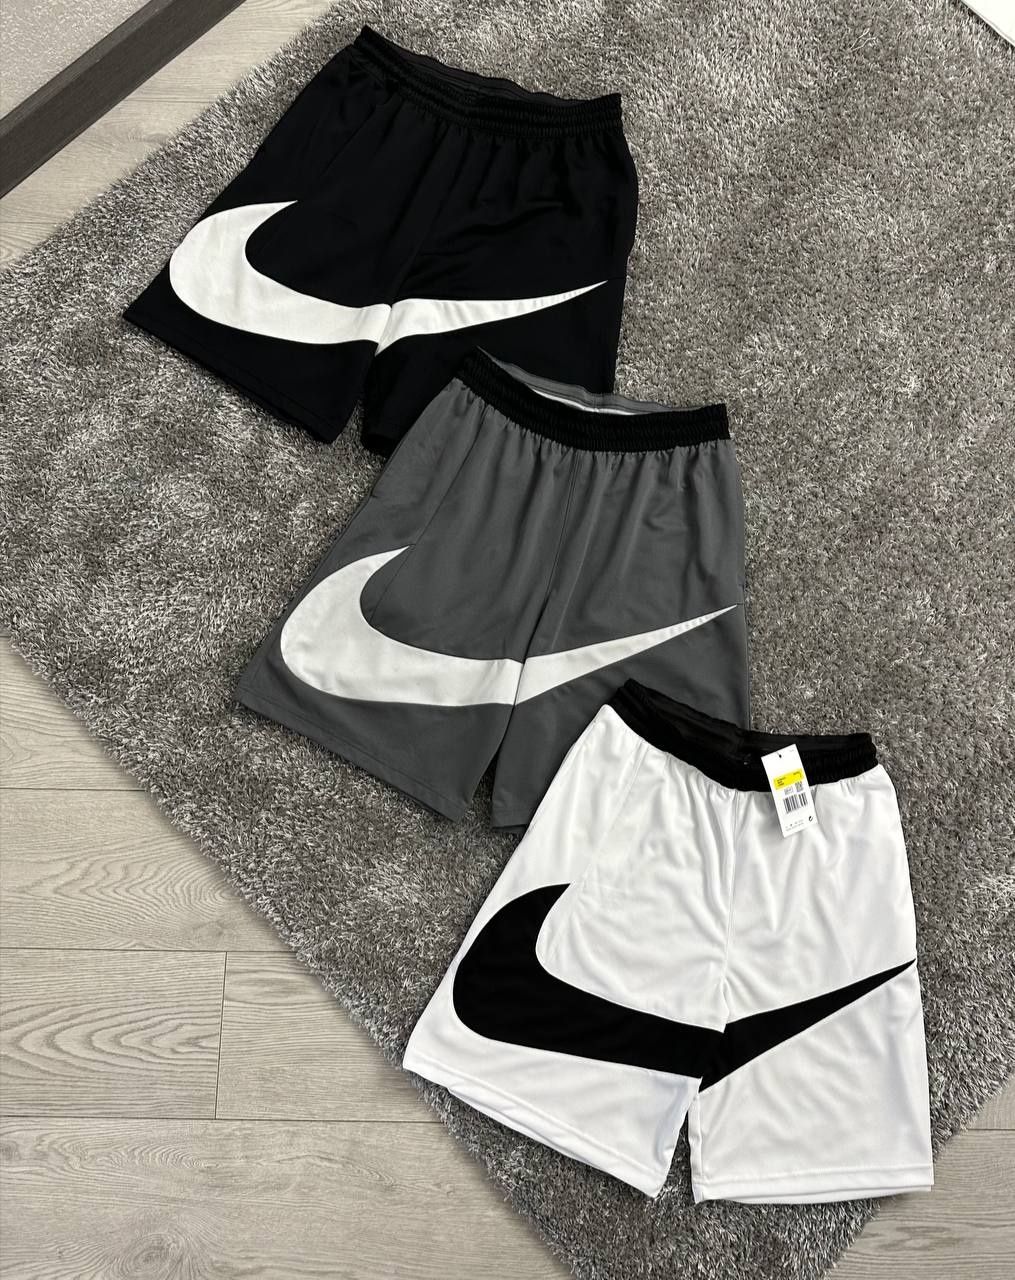 Шорти Nike Swoosh, 1:1 чоловічі шорти Nike, Найк, свуш шорти